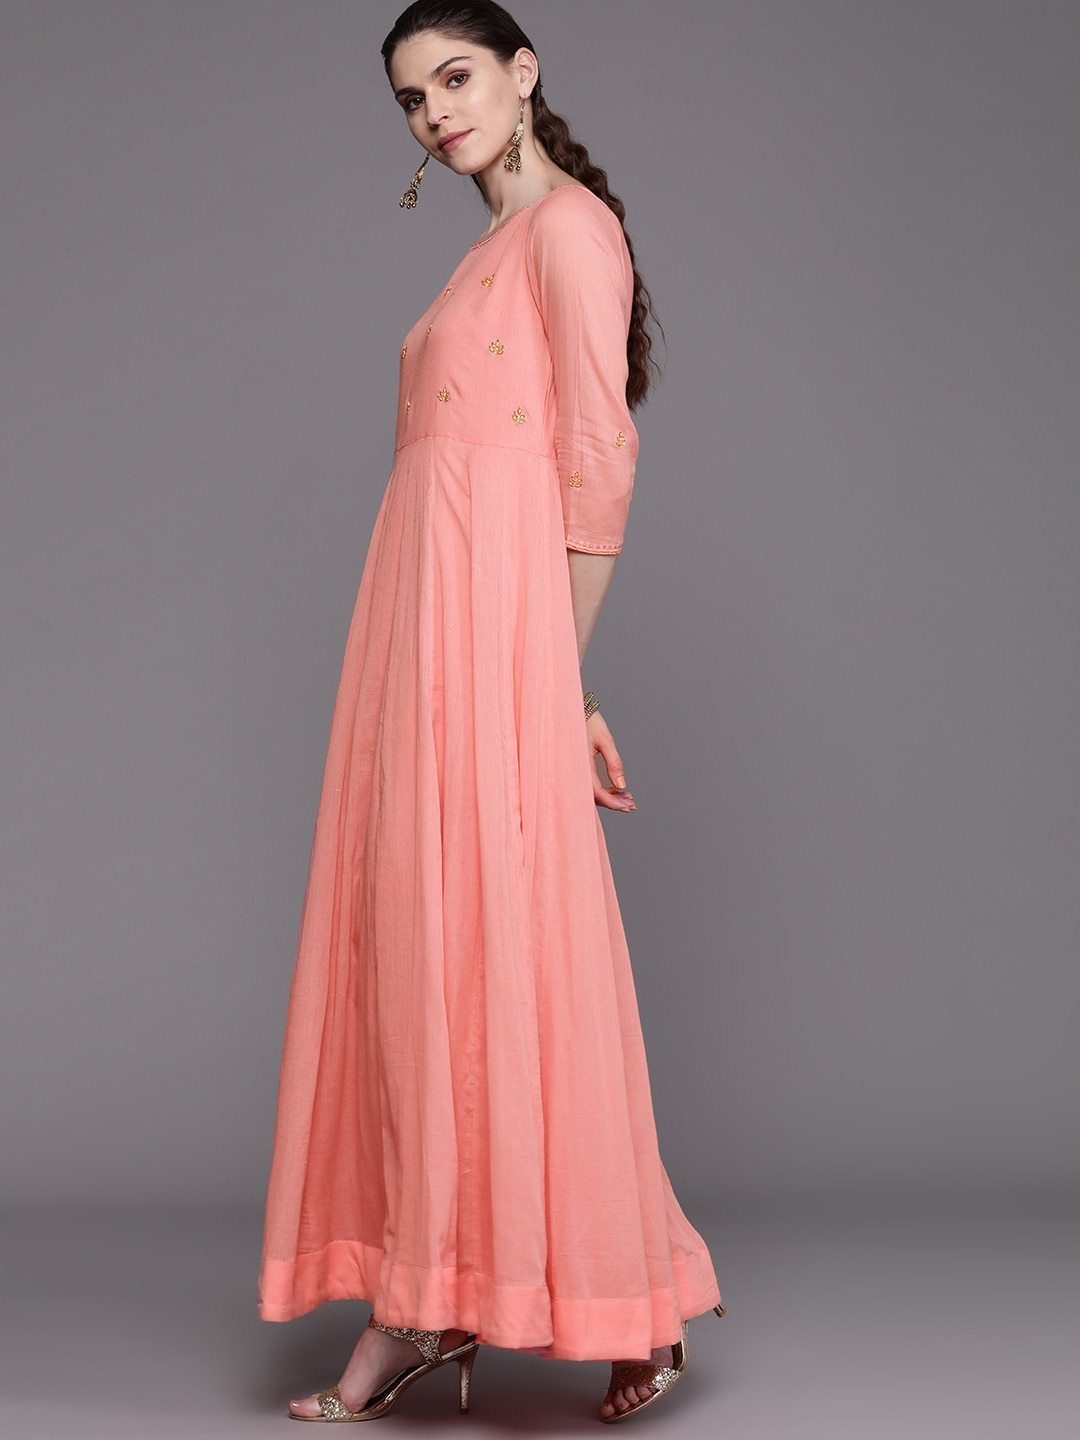 Women's  Peach-Coloured & Golden Yoke Design Anarkali Kurta With Dupatta - AKS